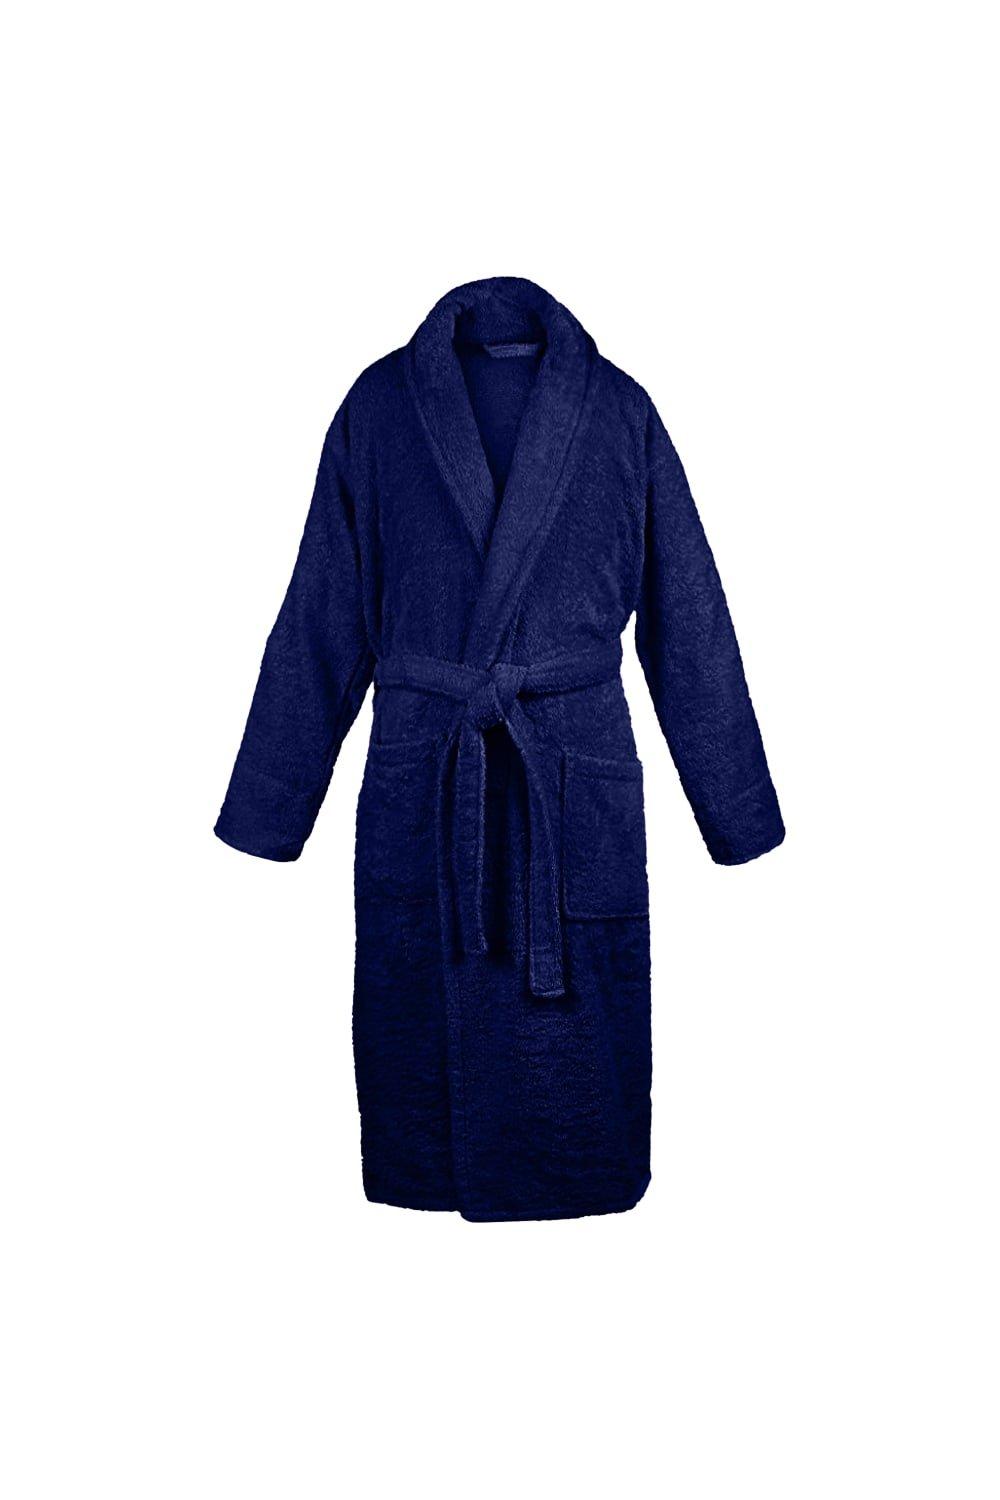 Bath Robe With Shawl Collar